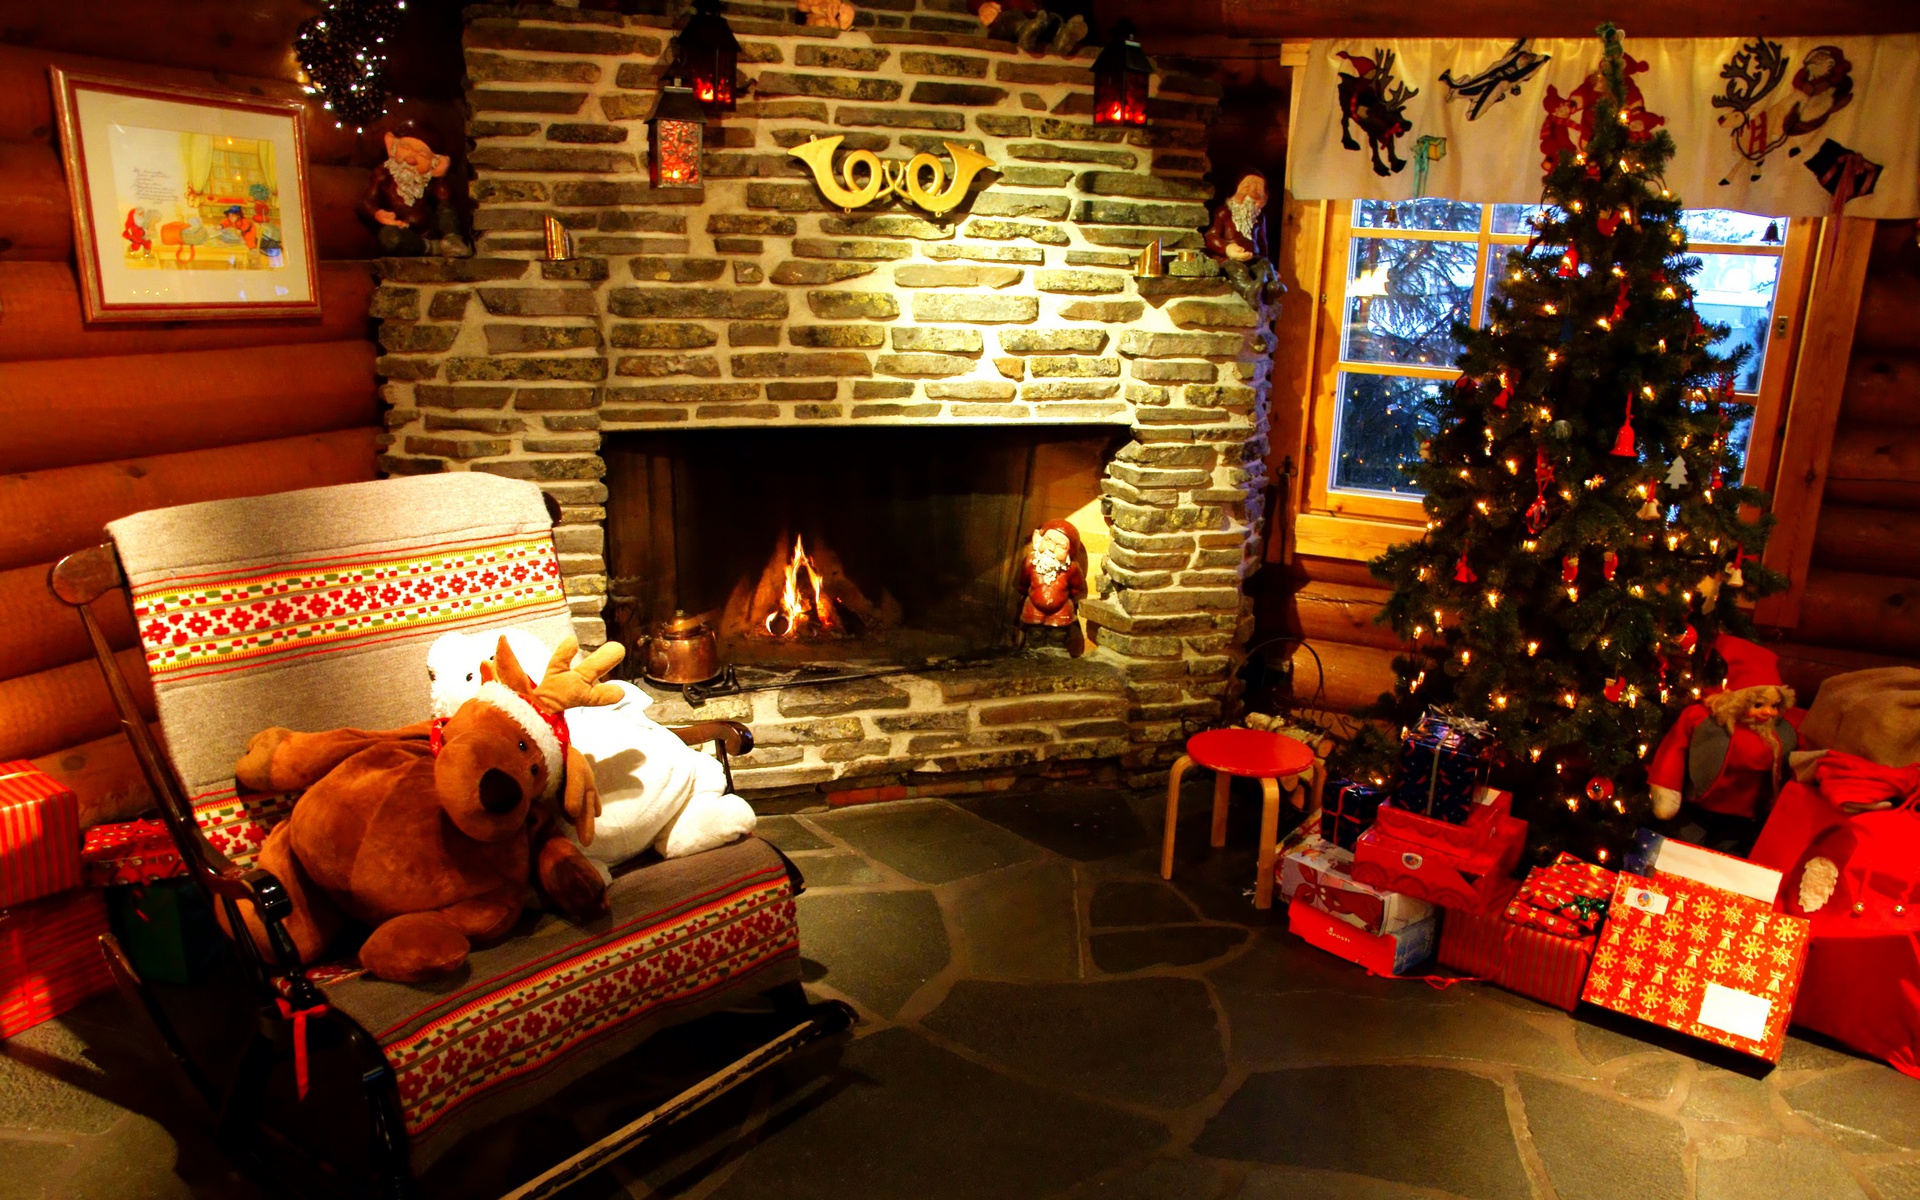 3d обои В комнате весело потрескивают дрова в камине,наряженная ёлка, под ней груда новогодних подарков  позитив # 68719